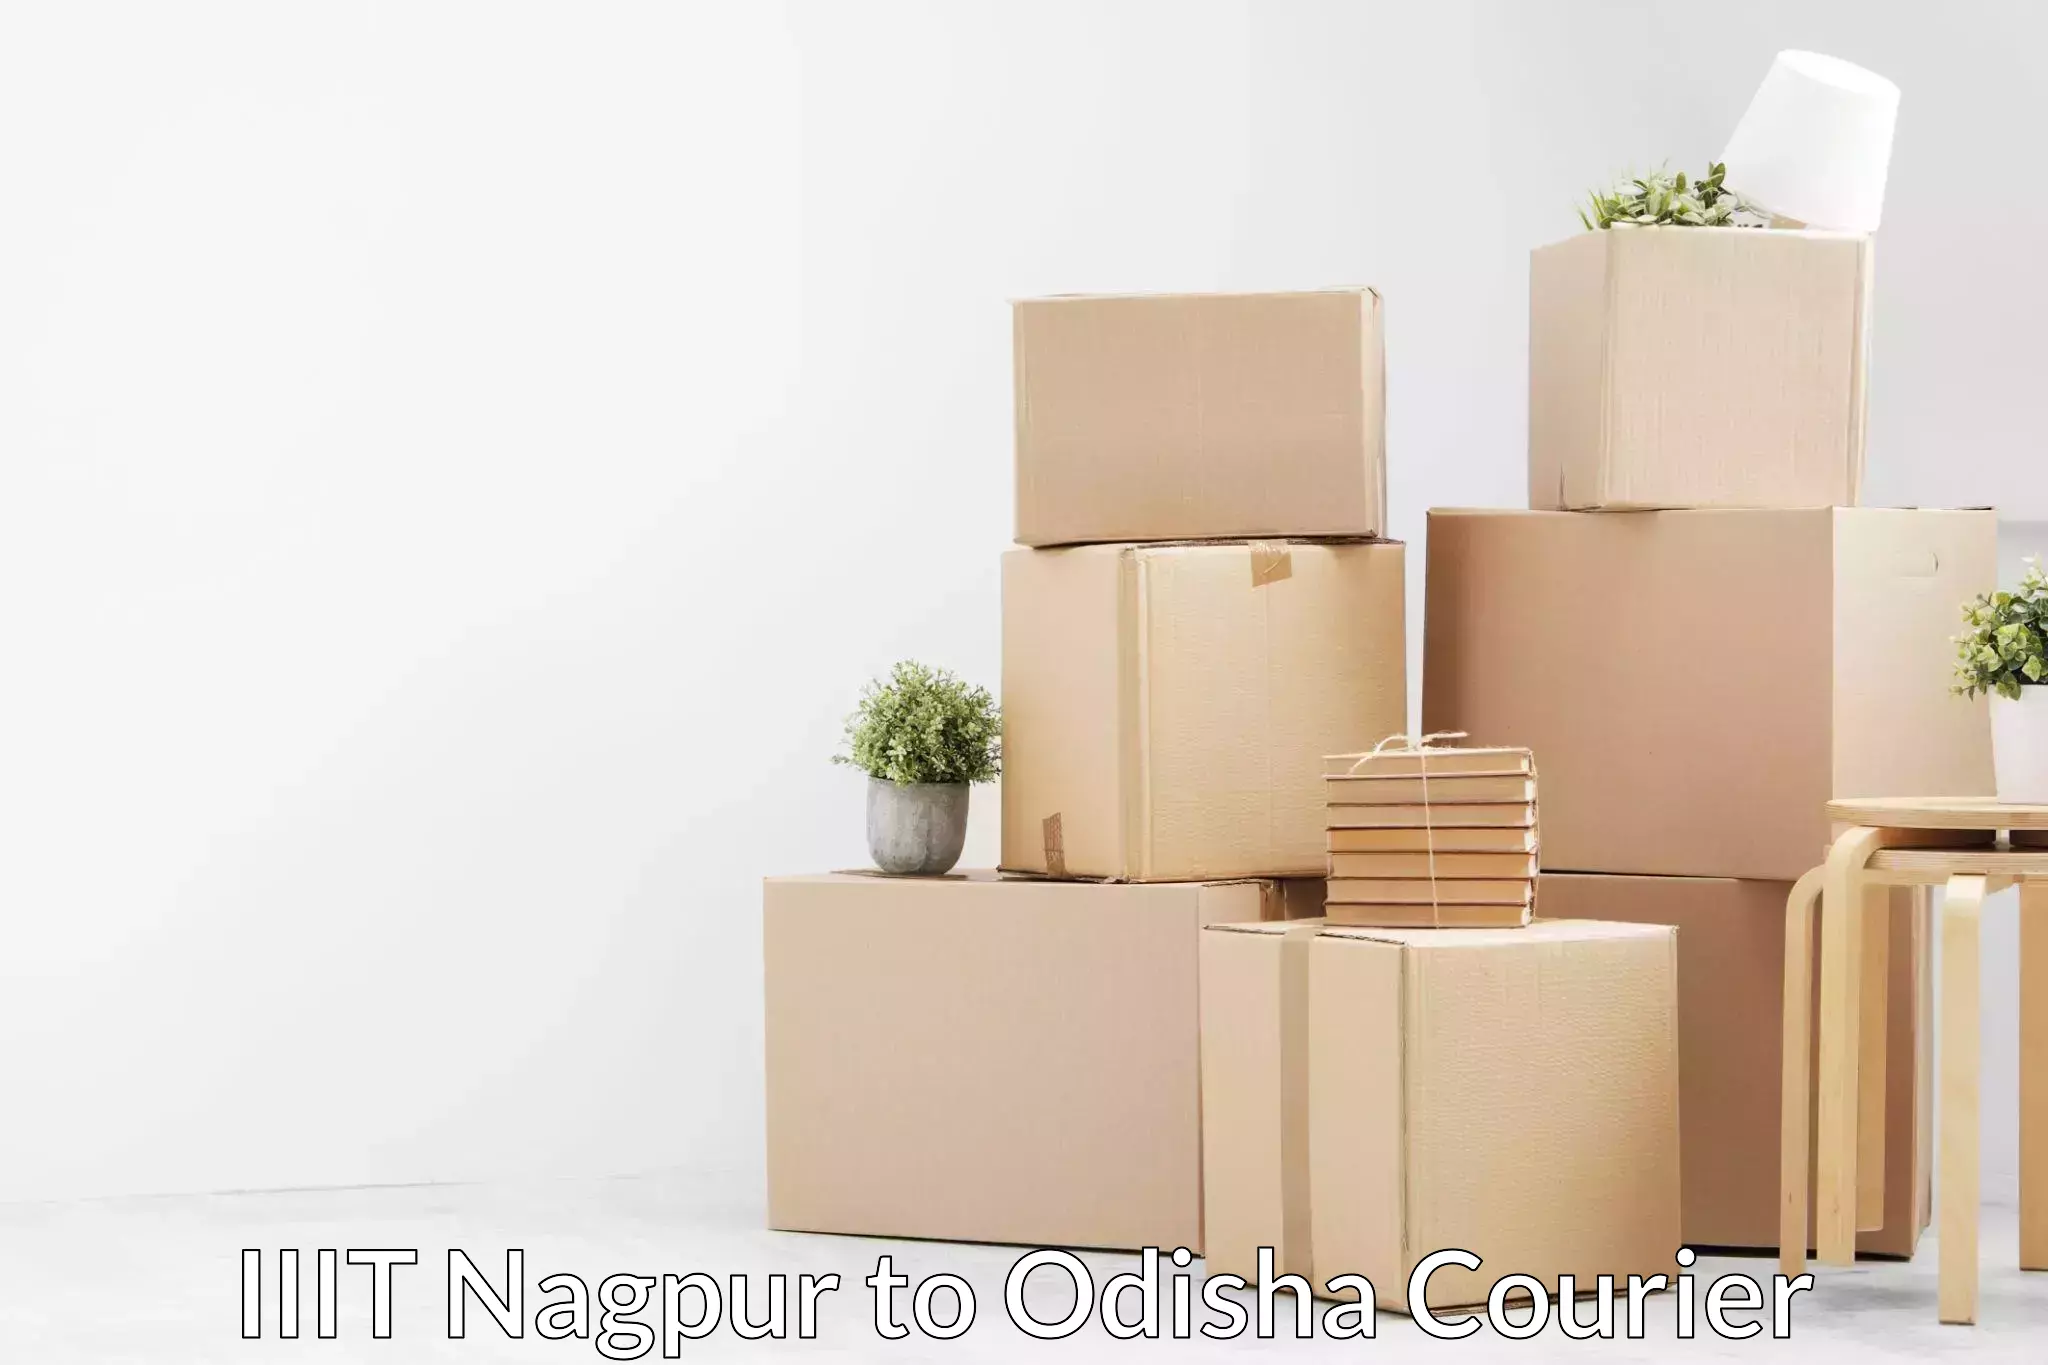 Residential furniture transport IIIT Nagpur to Muniguda